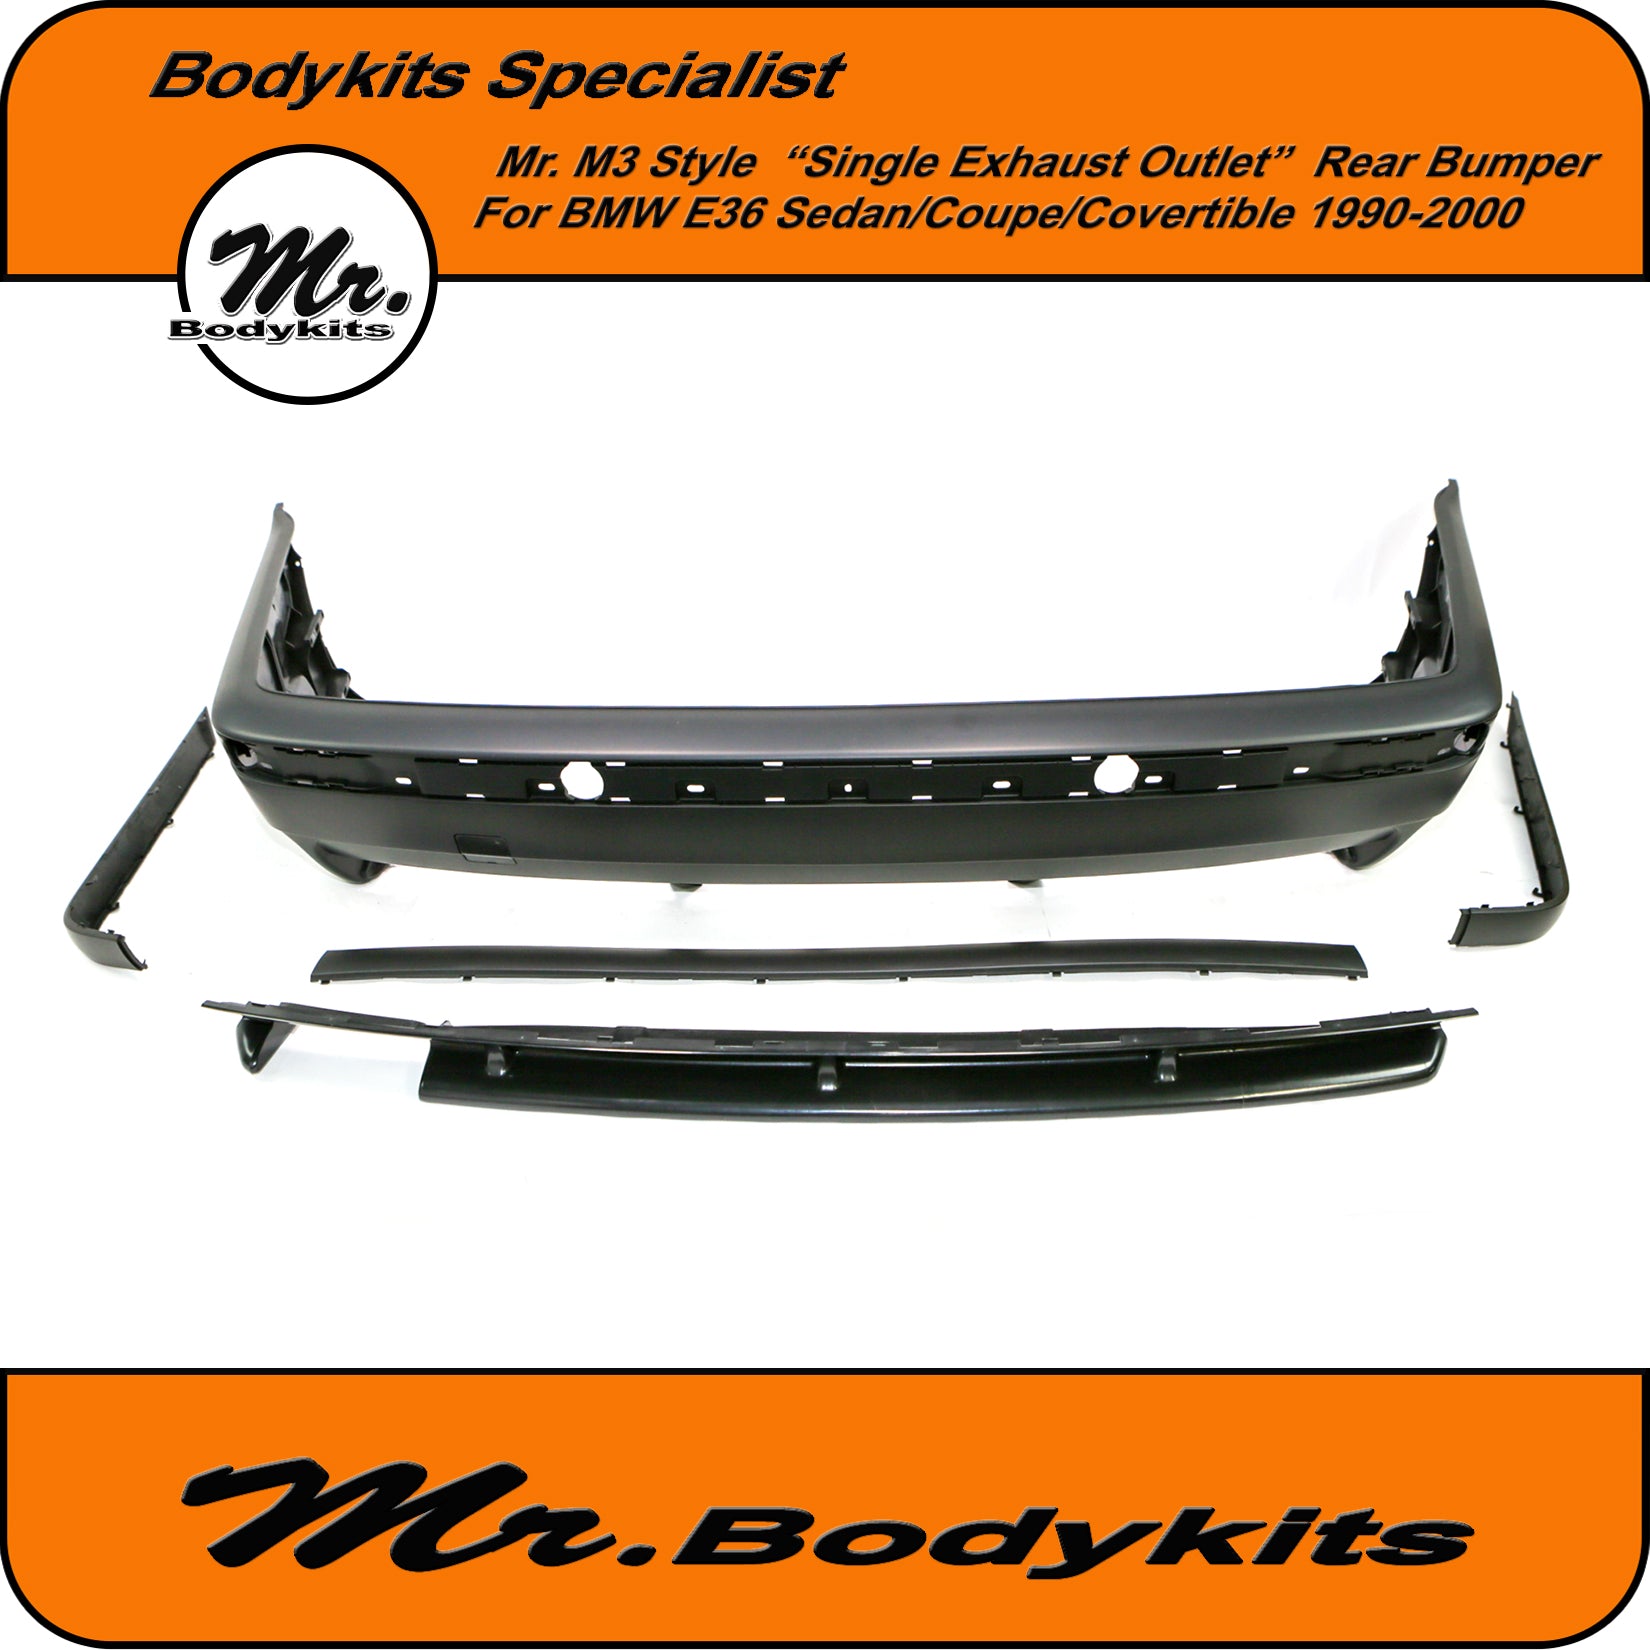 Mr. Bodykits M3 Style Front Bumper For BMW E36 Coupe/Sedan/Convertible - Mr  Bodykits